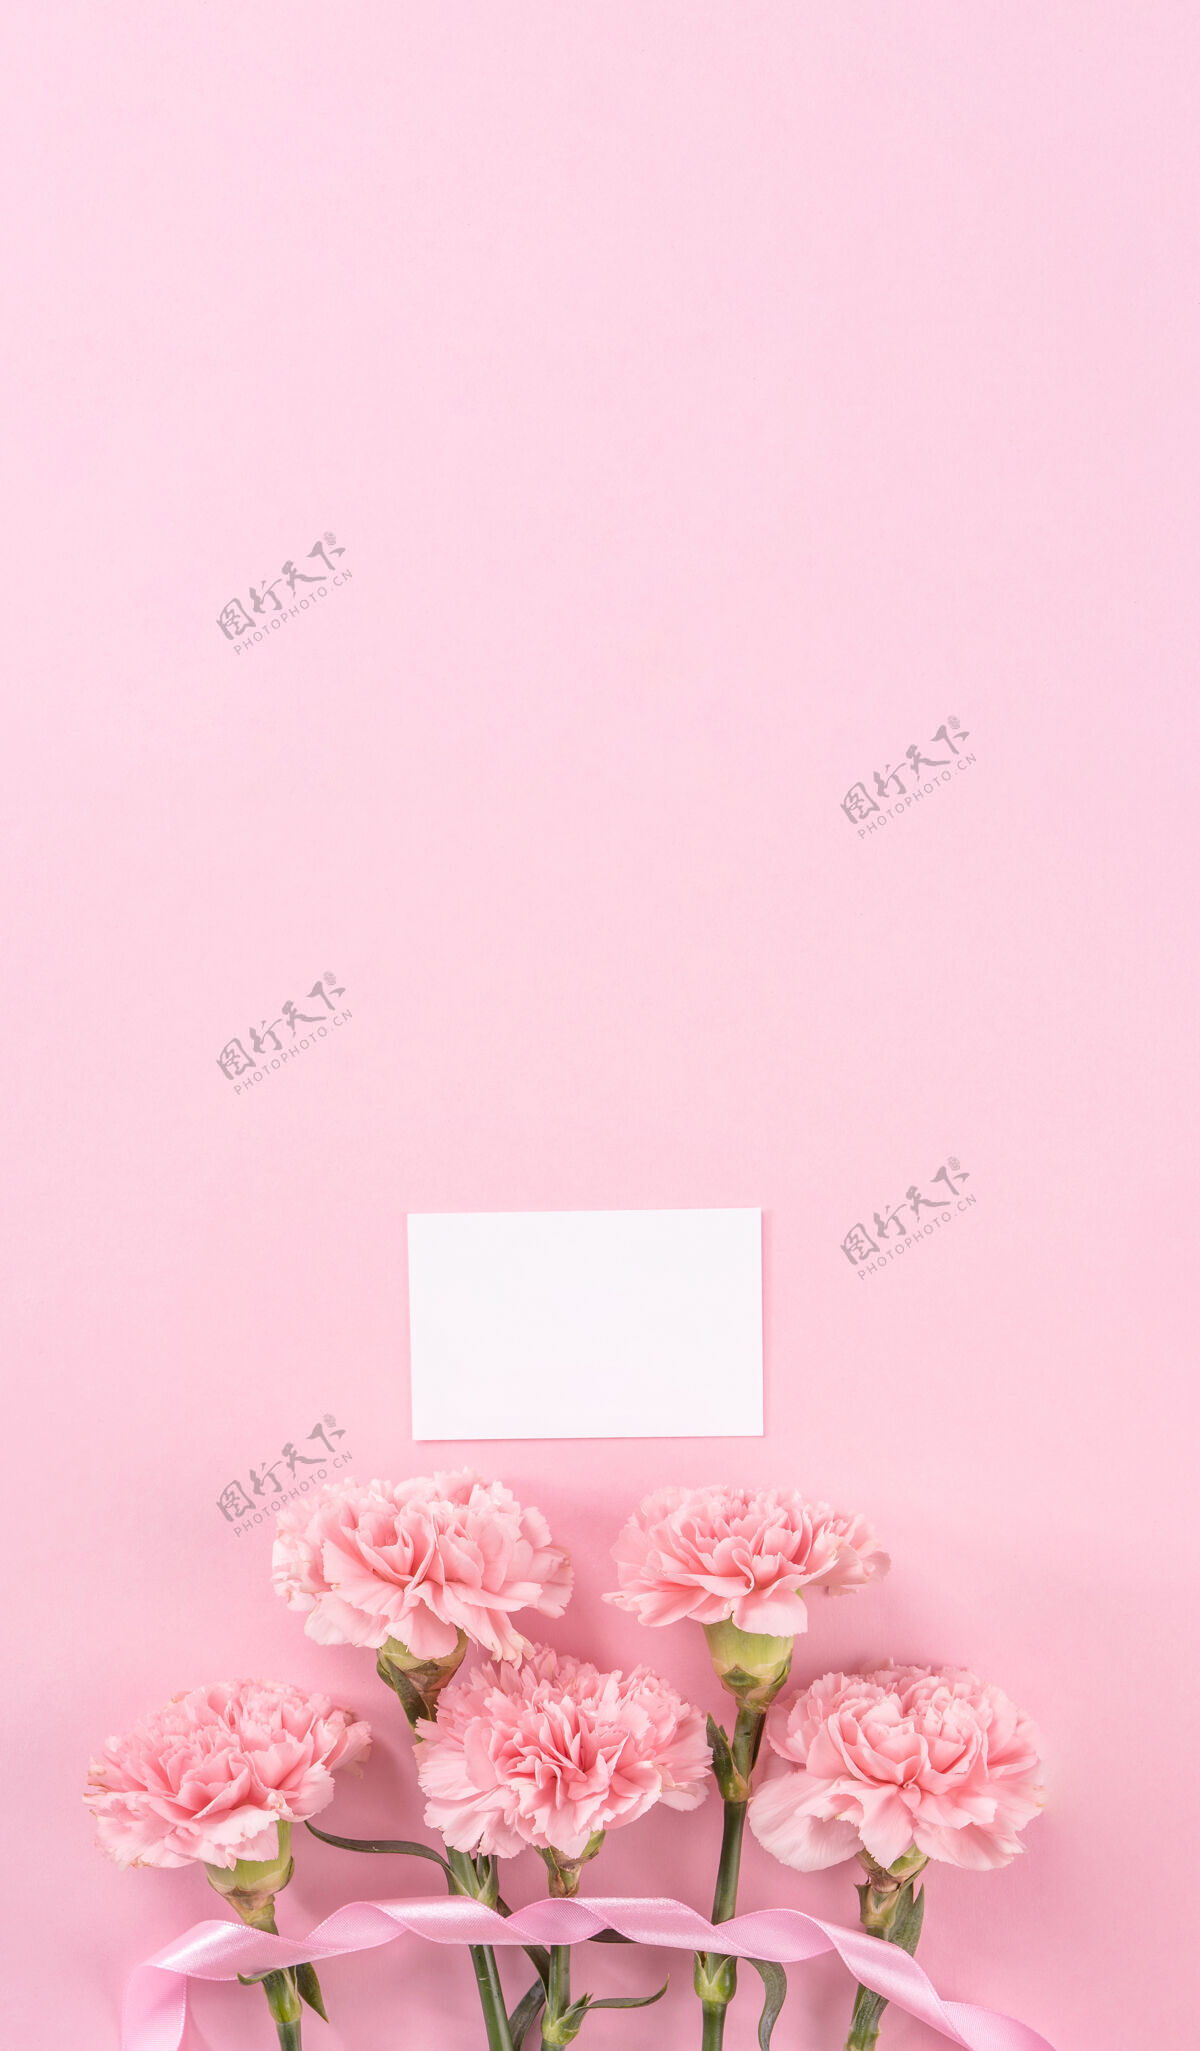 苍白粉色康乃馨的俯视图 背景是粉色的母亲节花空白束感恩